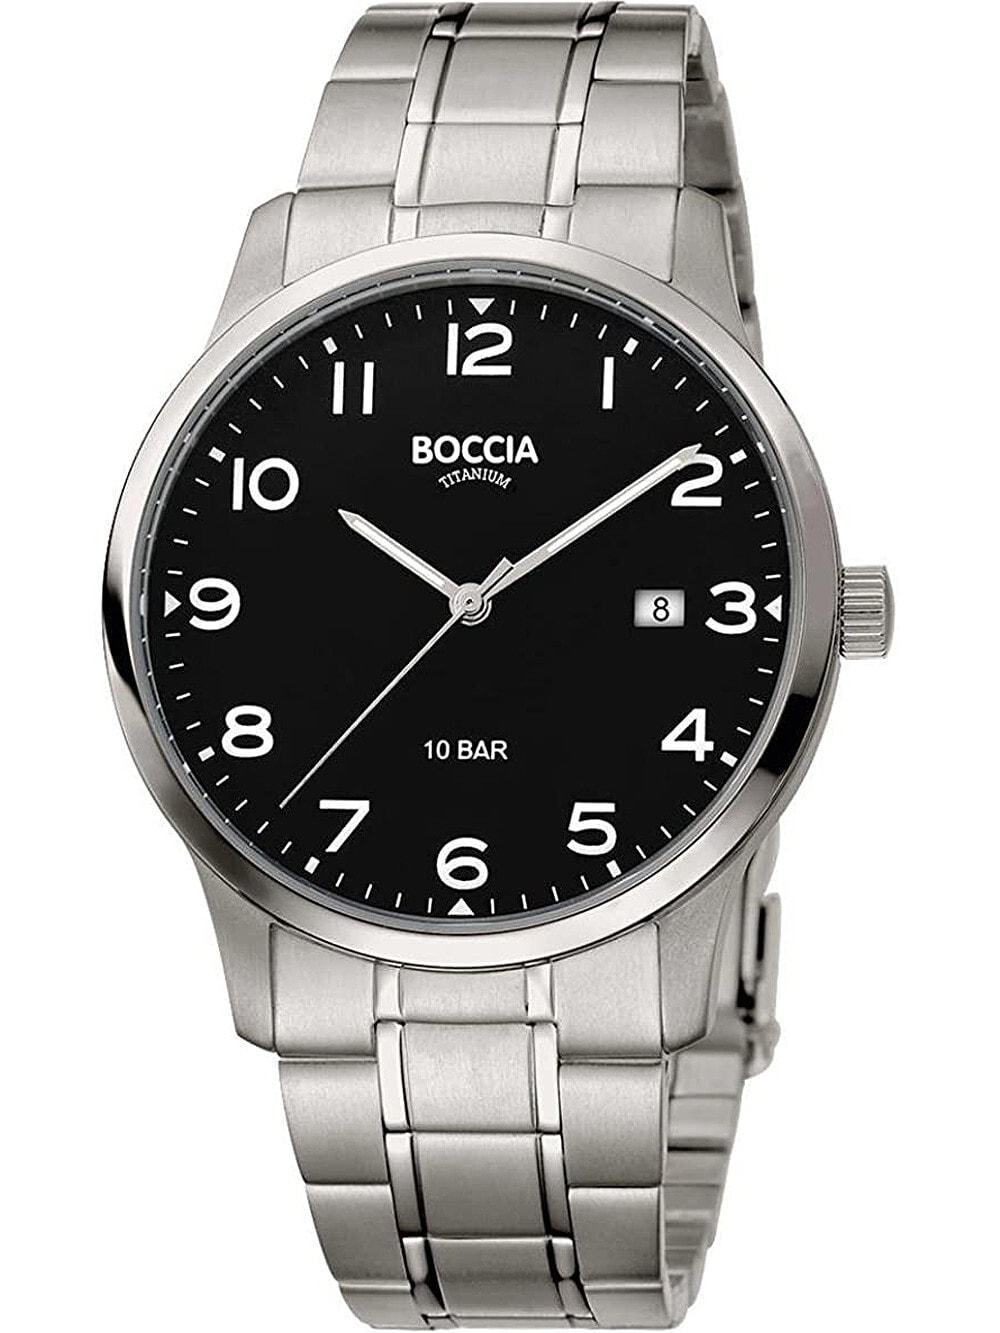 Мужские наручные часы с серебряным браслетом Boccia 3621-01 mens watch titanium 40mm 10ATM